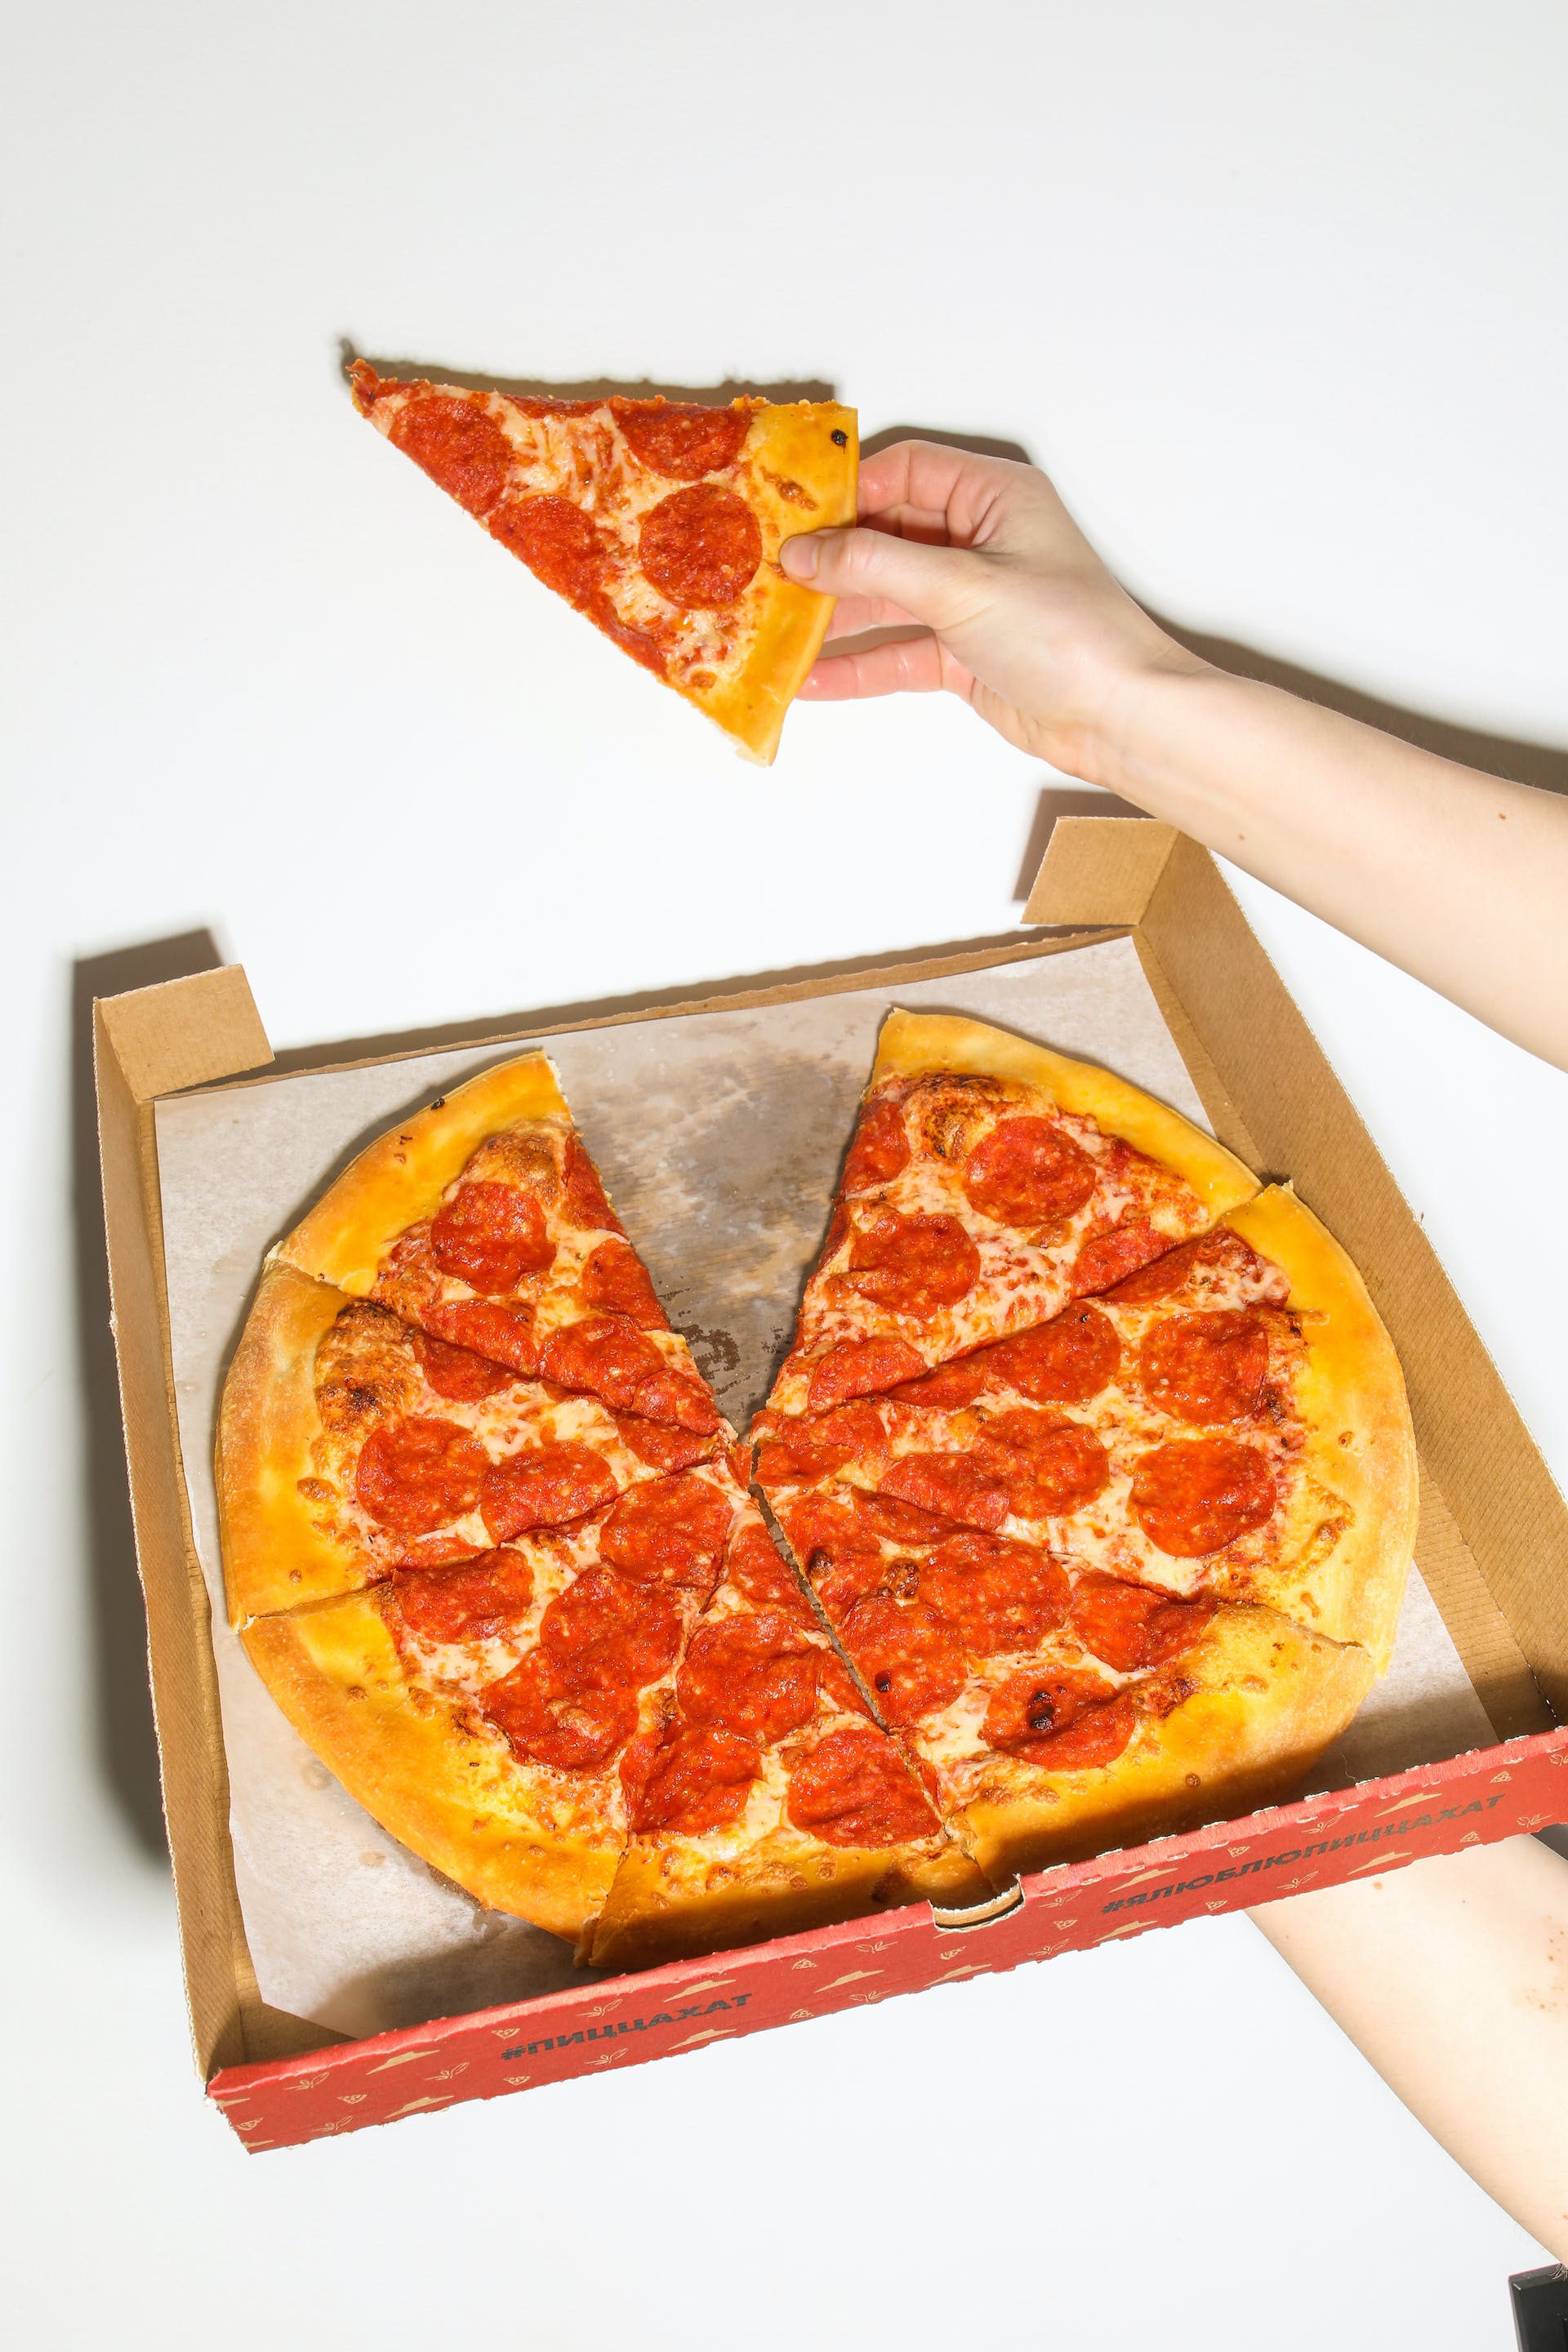 Une personne tenant une part de pizza et une boîte de pizza | Source : Pexels